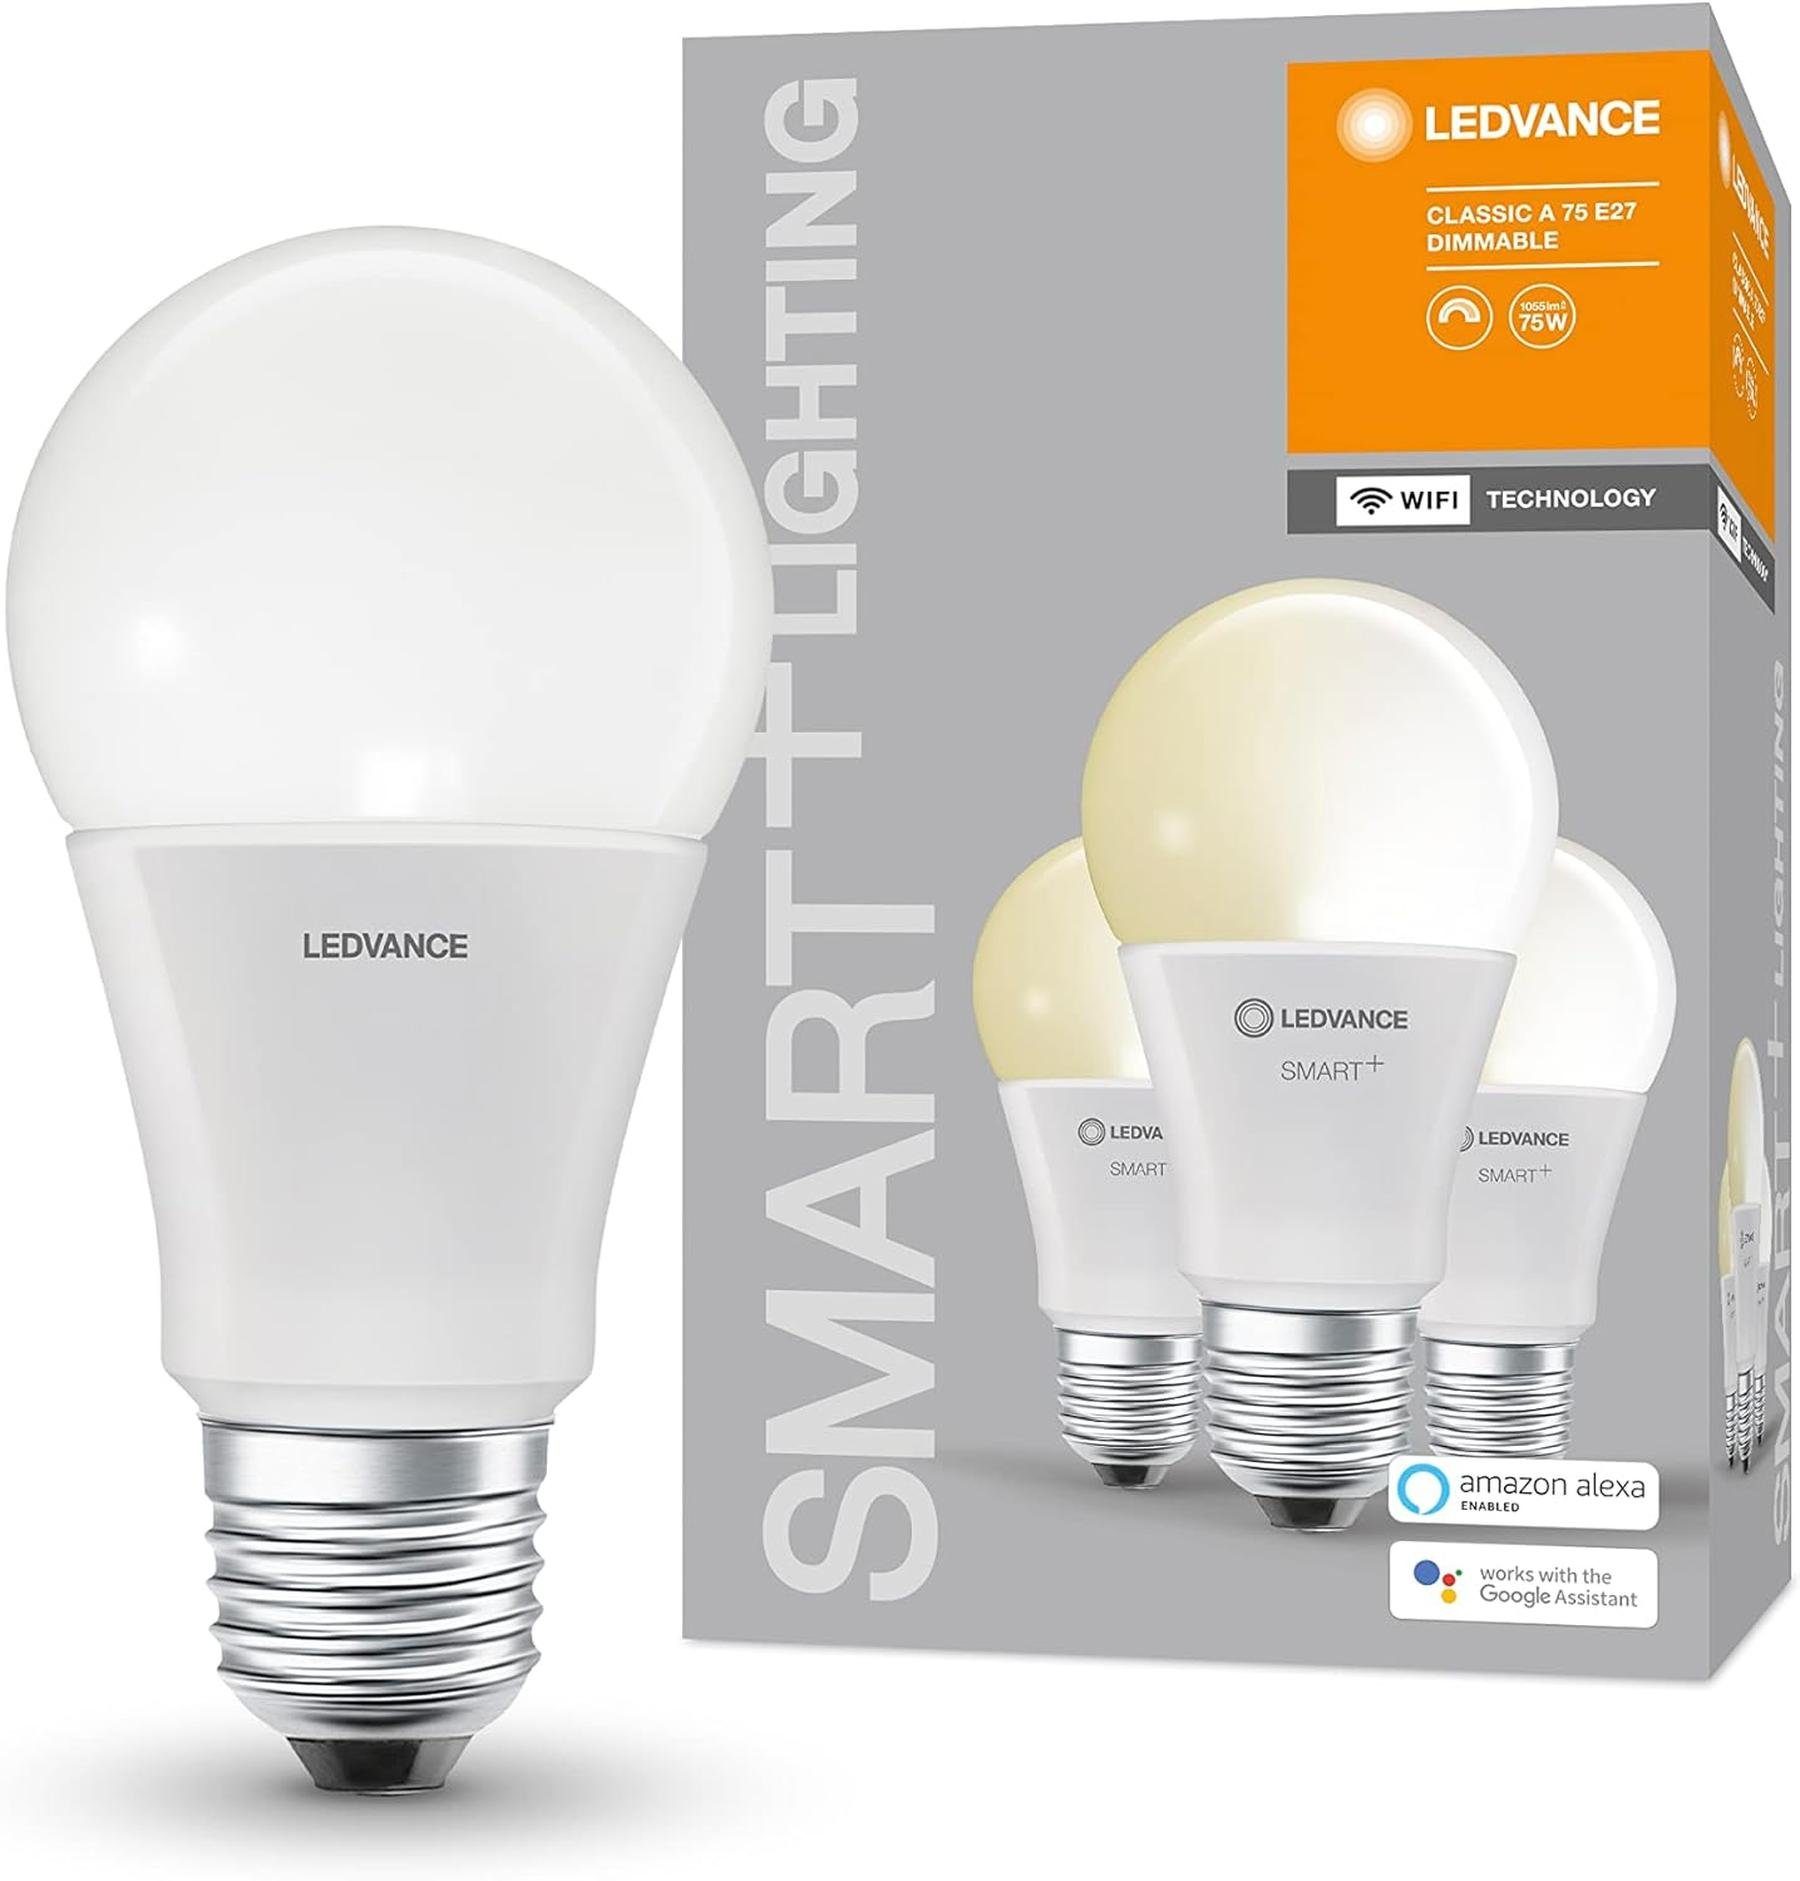 E27 9,5W LED-Leuchtmittel Energiesparend, dimmbar LED Lampe E27, Smart+ Mattiert Glühbirne Dimmbar, [3er], Warmweiss, warmweiß WiFi Ledvance